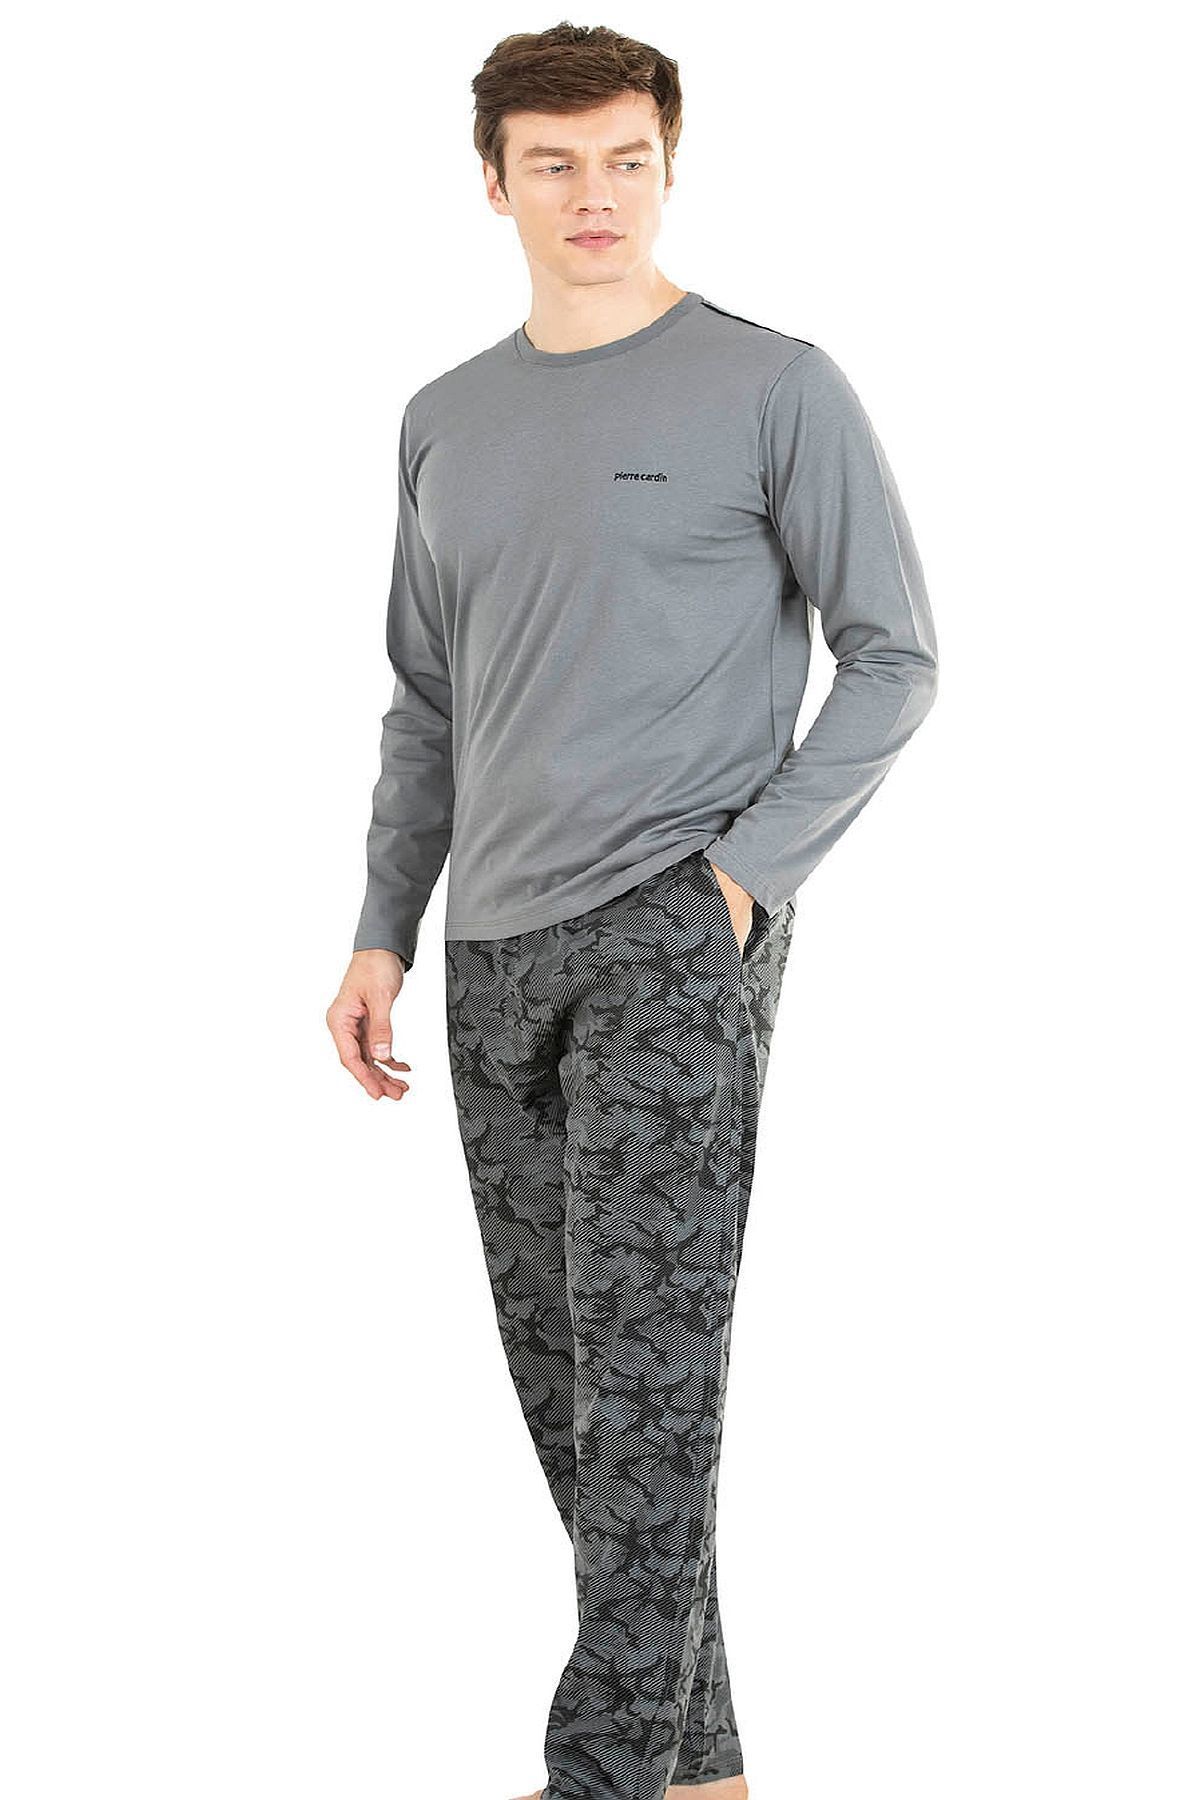 Pierre Cardin 6038 Erkek Uzun Kollu Pijama Takımı-gri